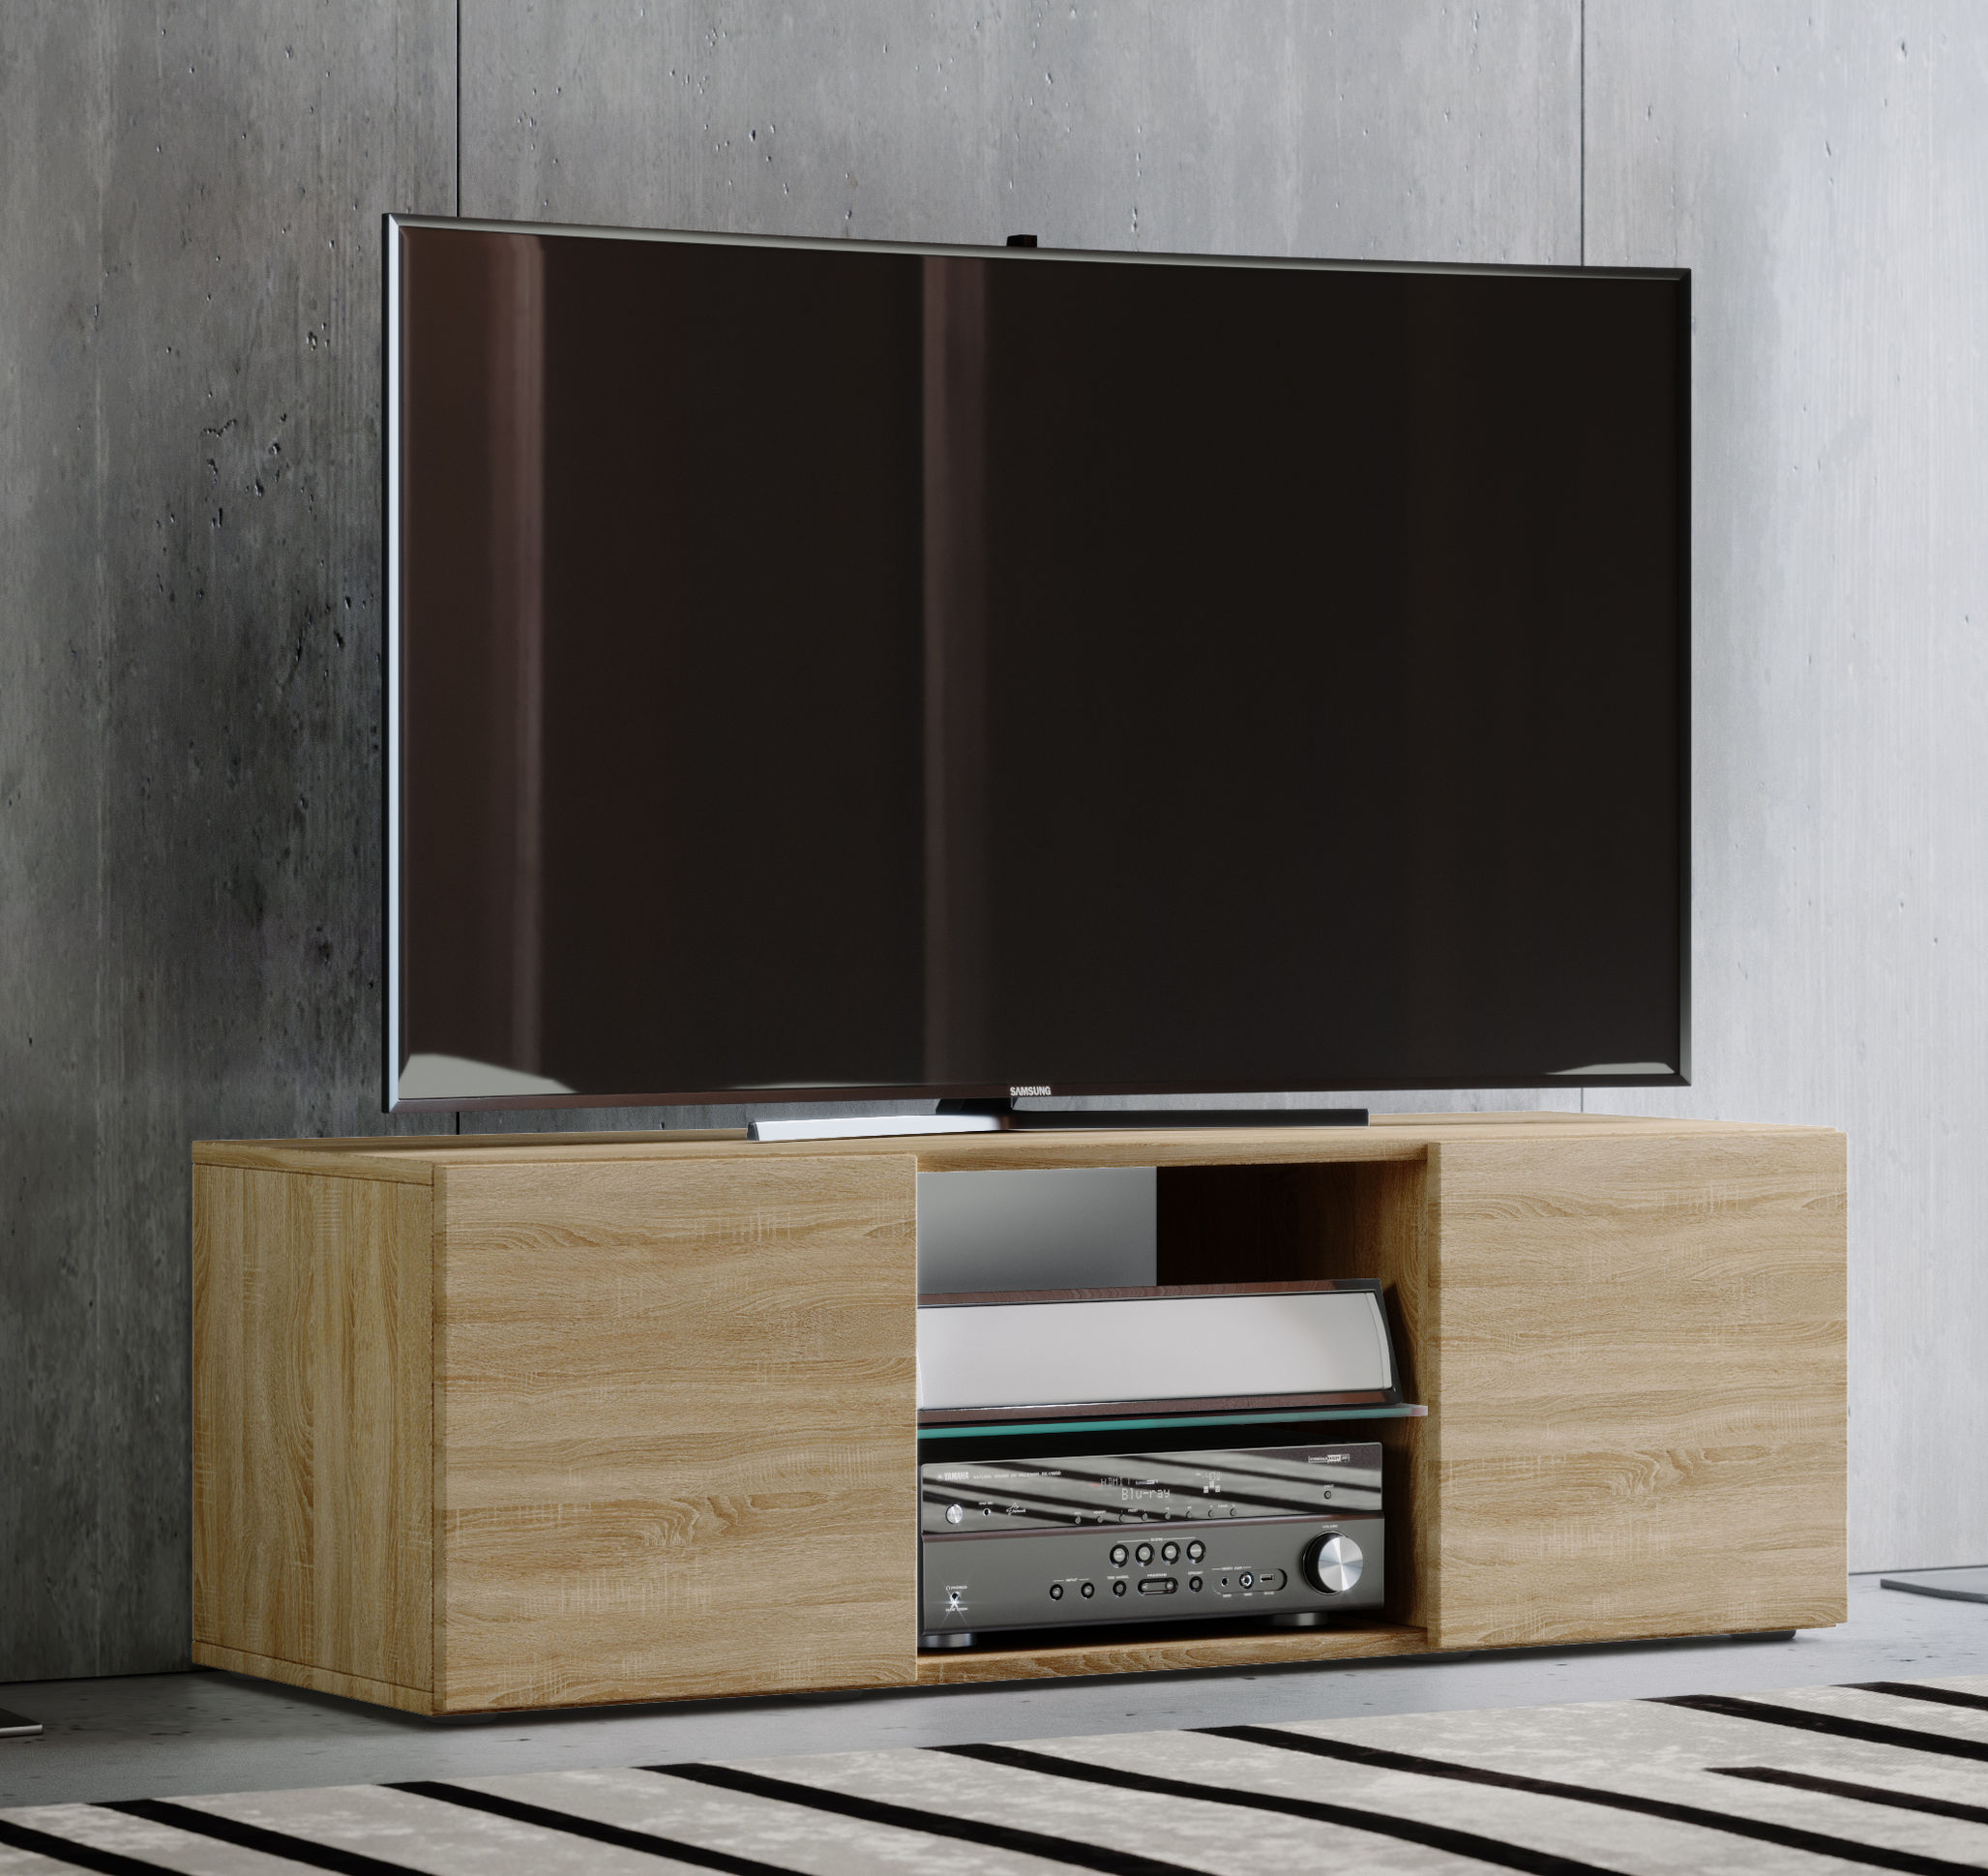 VCM Holz TV Lowboard Fernsehschrank Lowina Farbe: Sonoma-Eiche, Größe: 115  | Weltbild.de